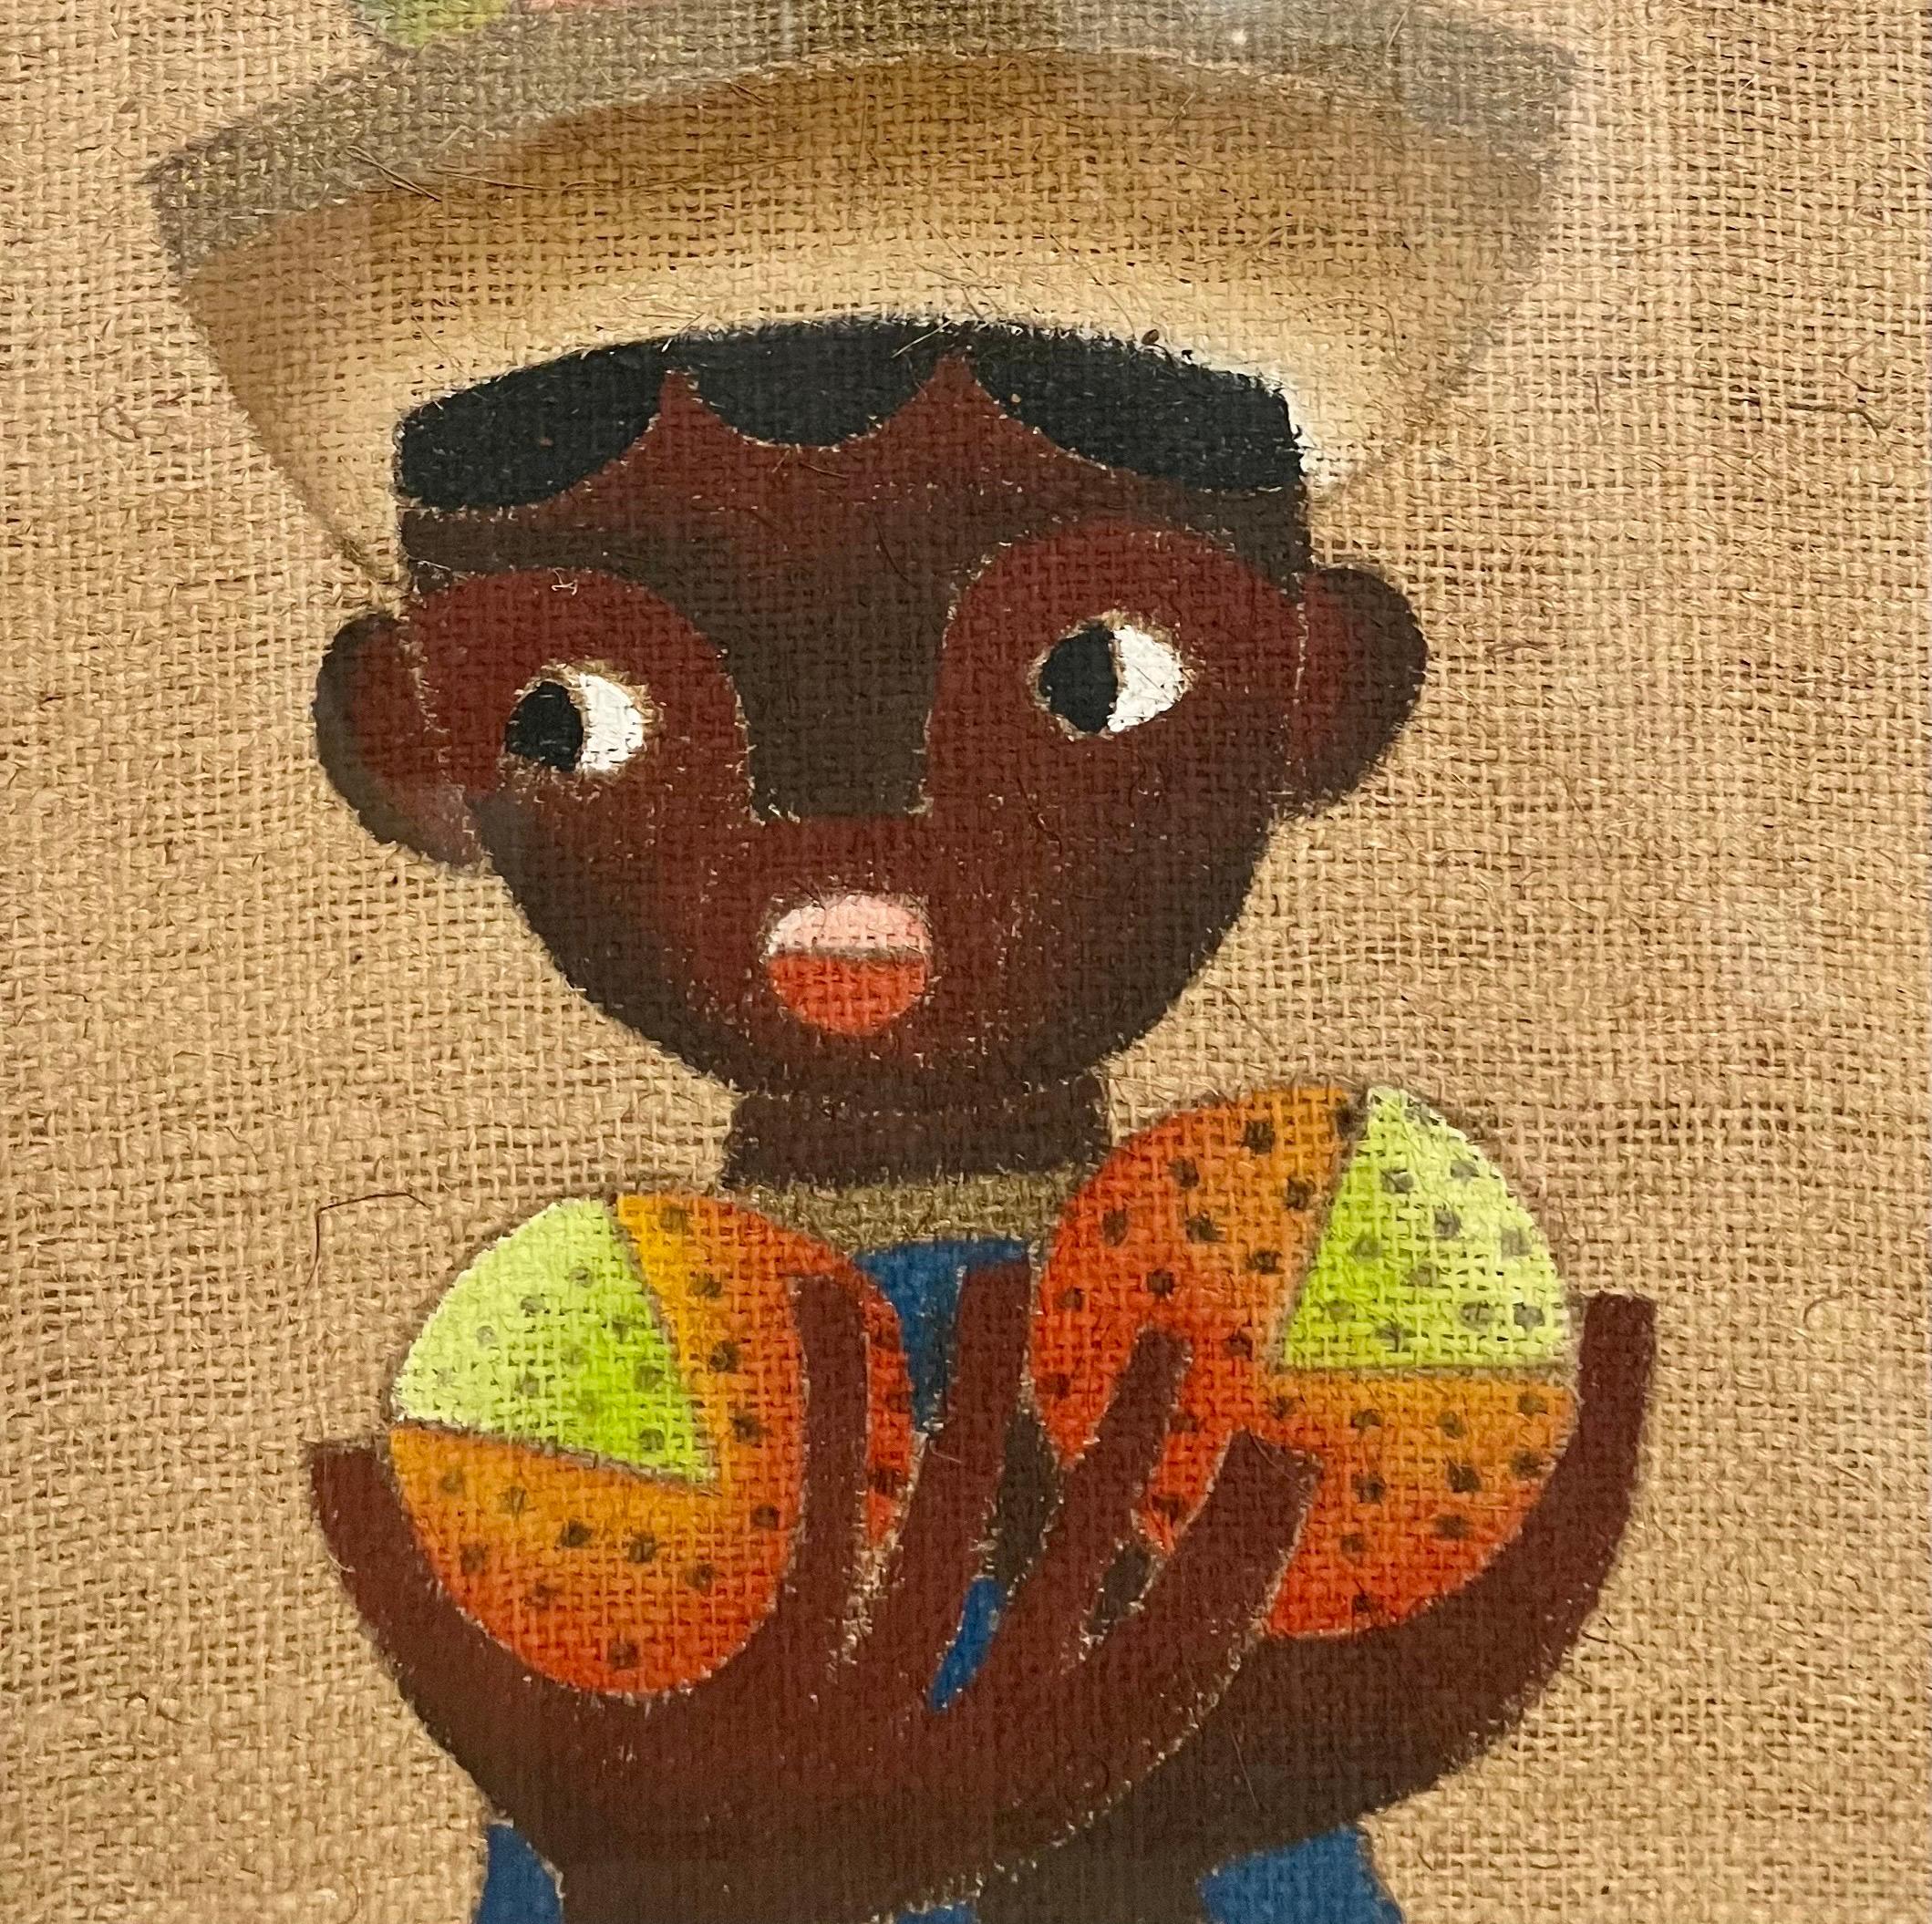 Jose Maria de Servin Figurative Painting – mexikanische Volkskunst, Junge, Ölgemälde auf Sackleinen, charmante afrikanische Kunst